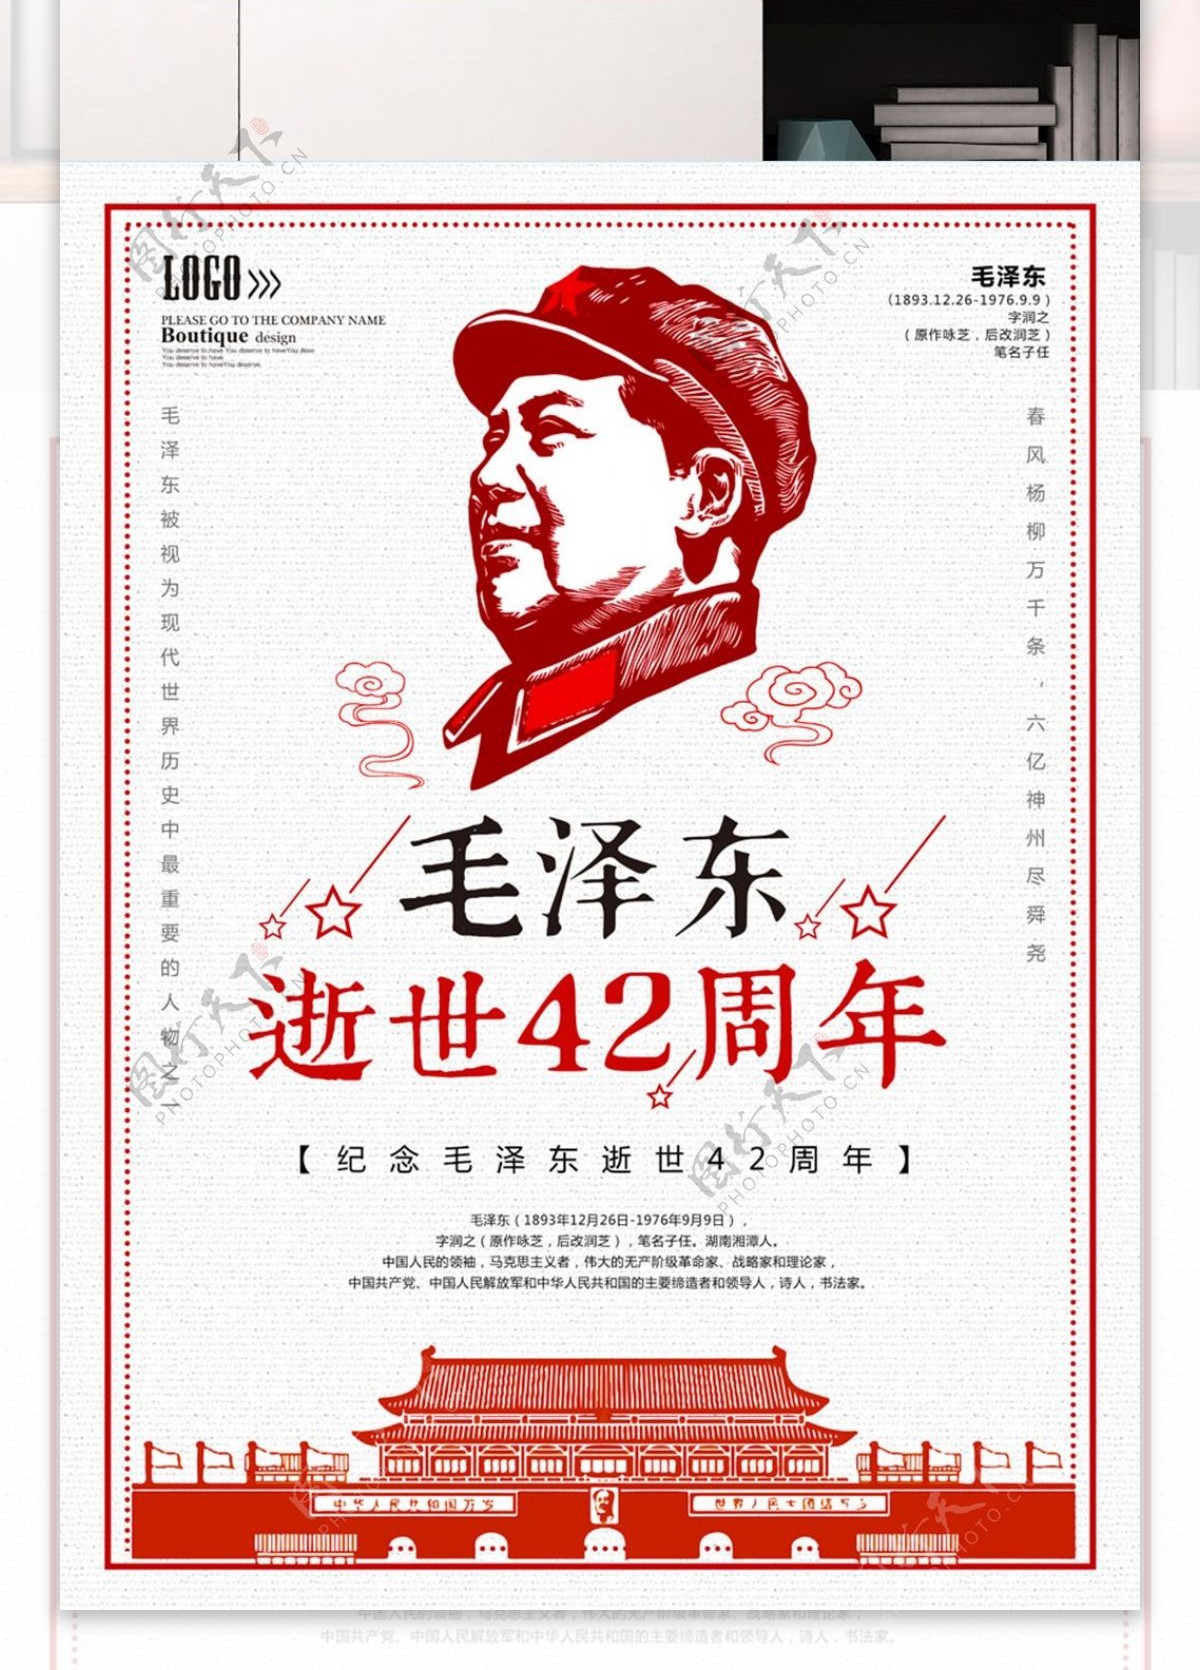 毛泽东逝世42周年纪念海报